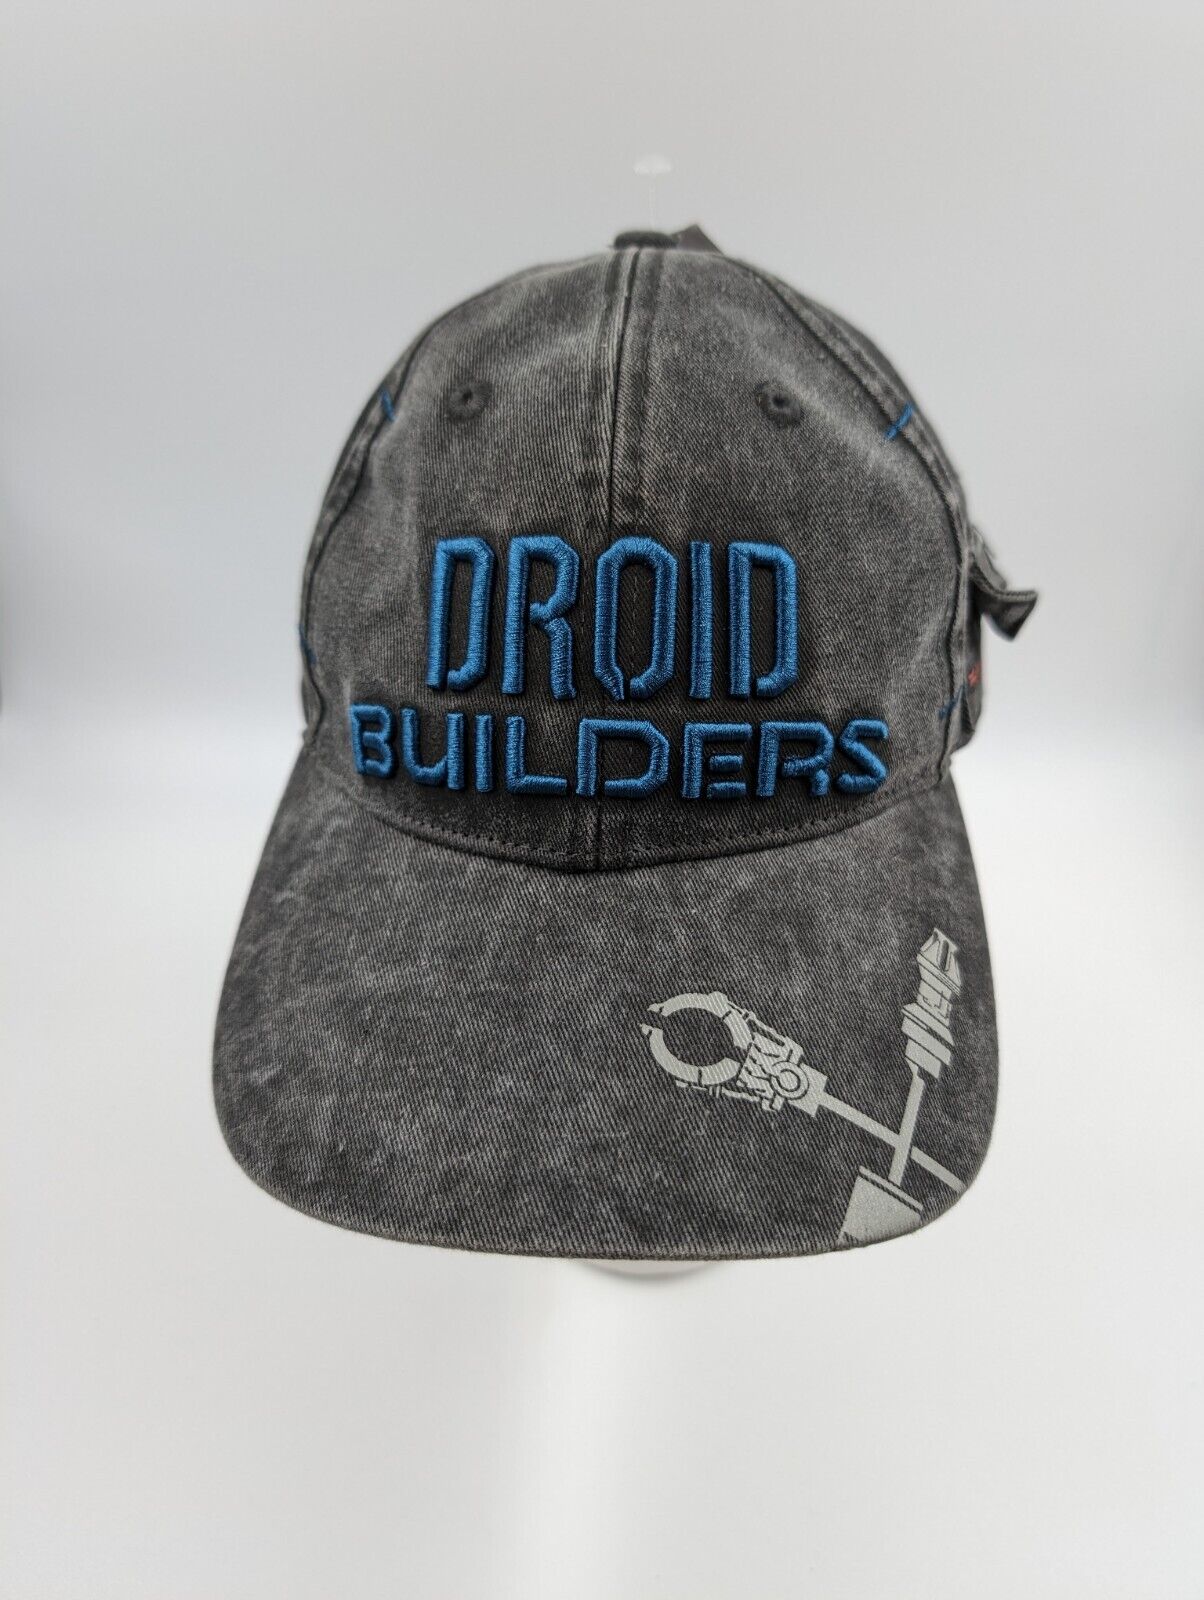 Star Wars Droid Depot Builders Baseball Hat Disney Galaxy\'s Edge Adult Adjust 